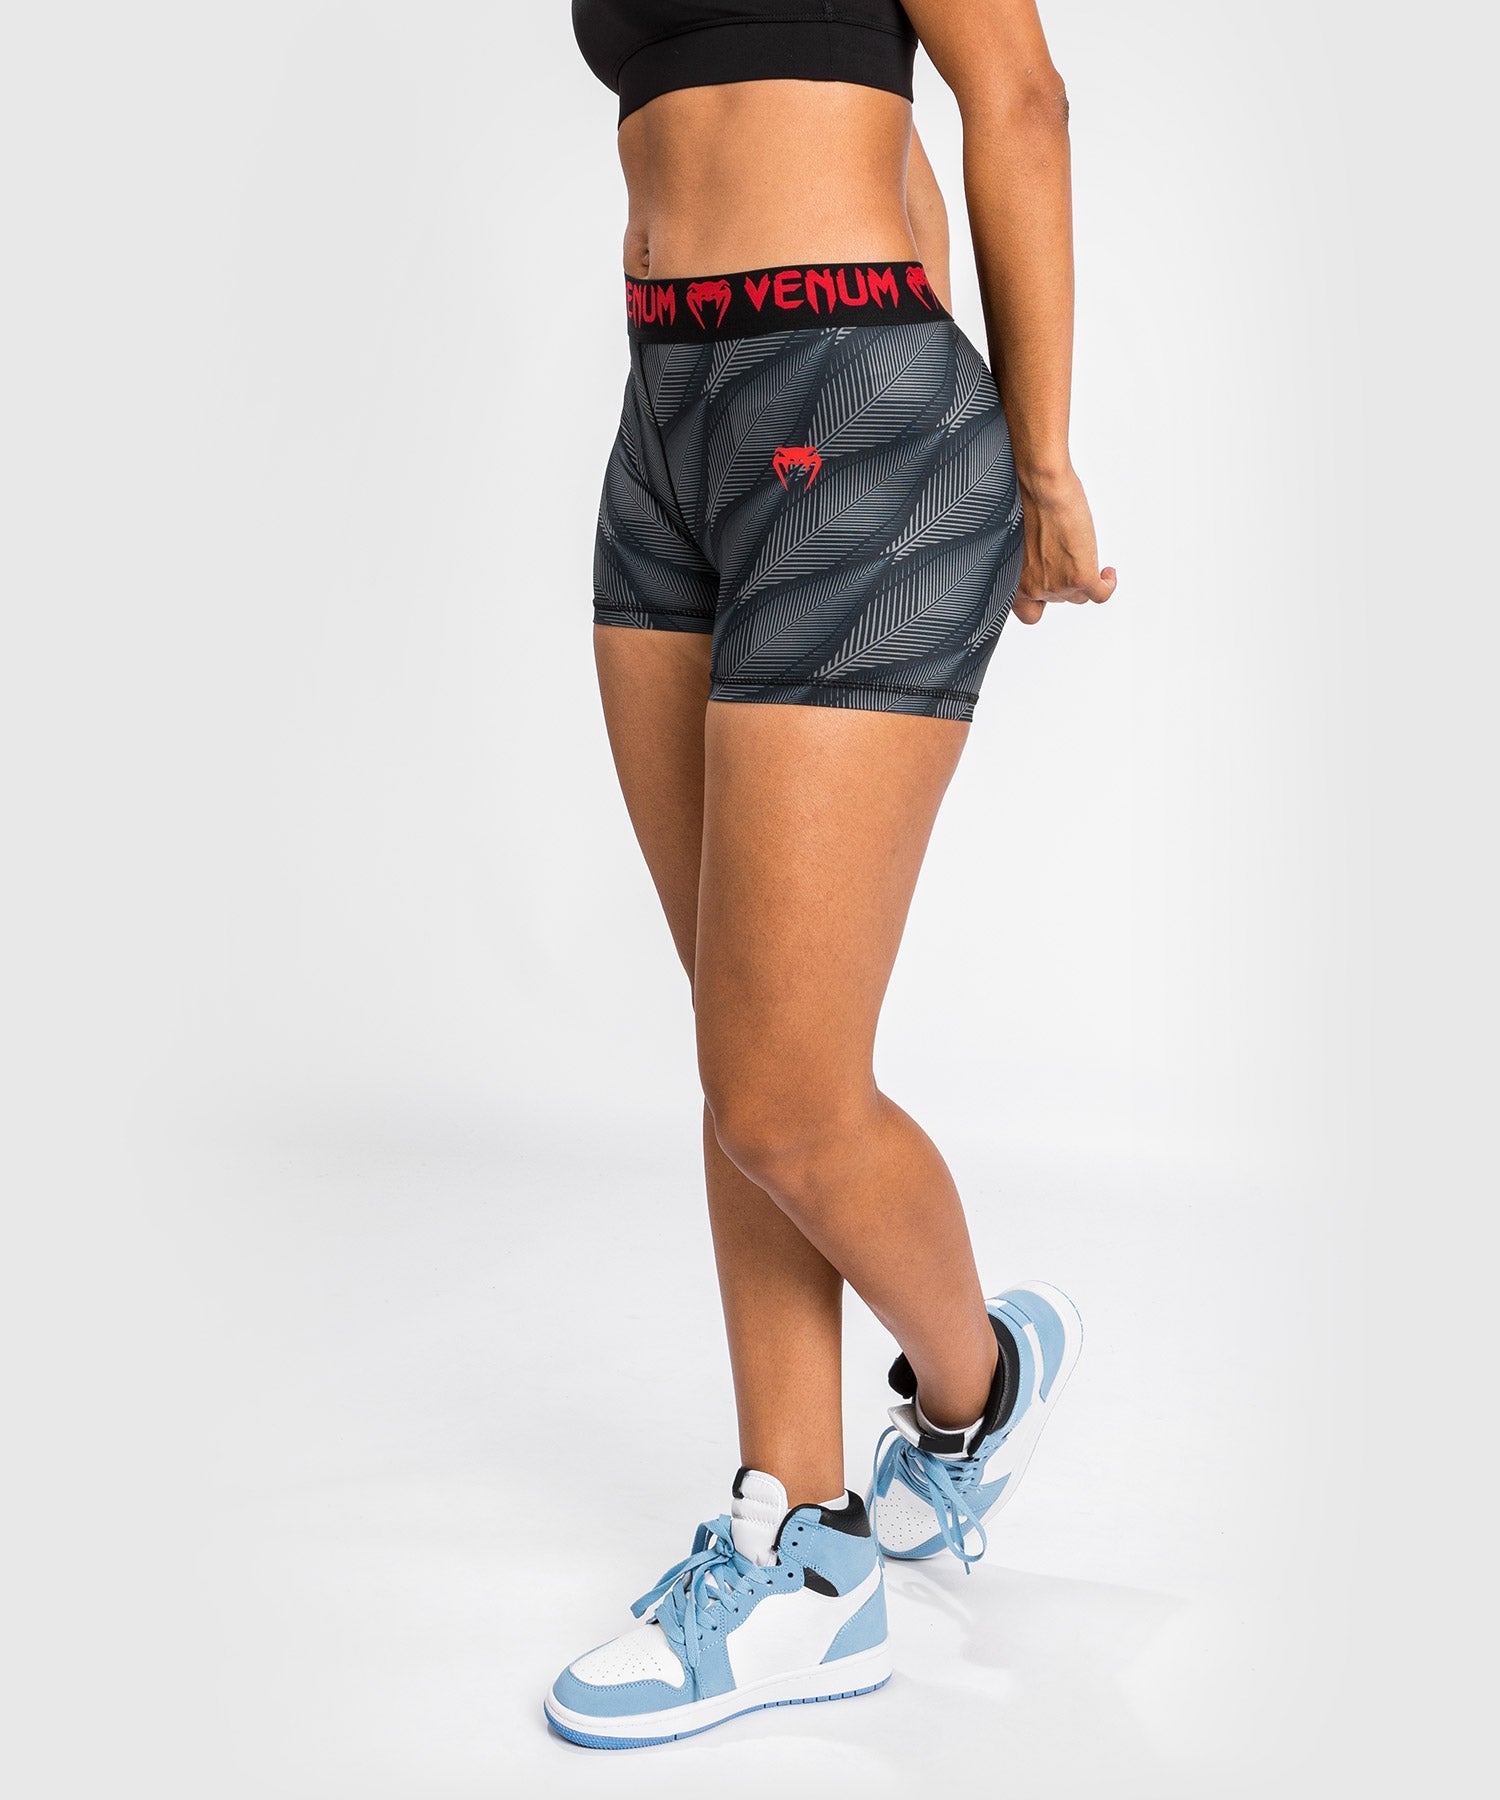 Venum Phantom Compression Shorts - For Women - Black/Red – Venum